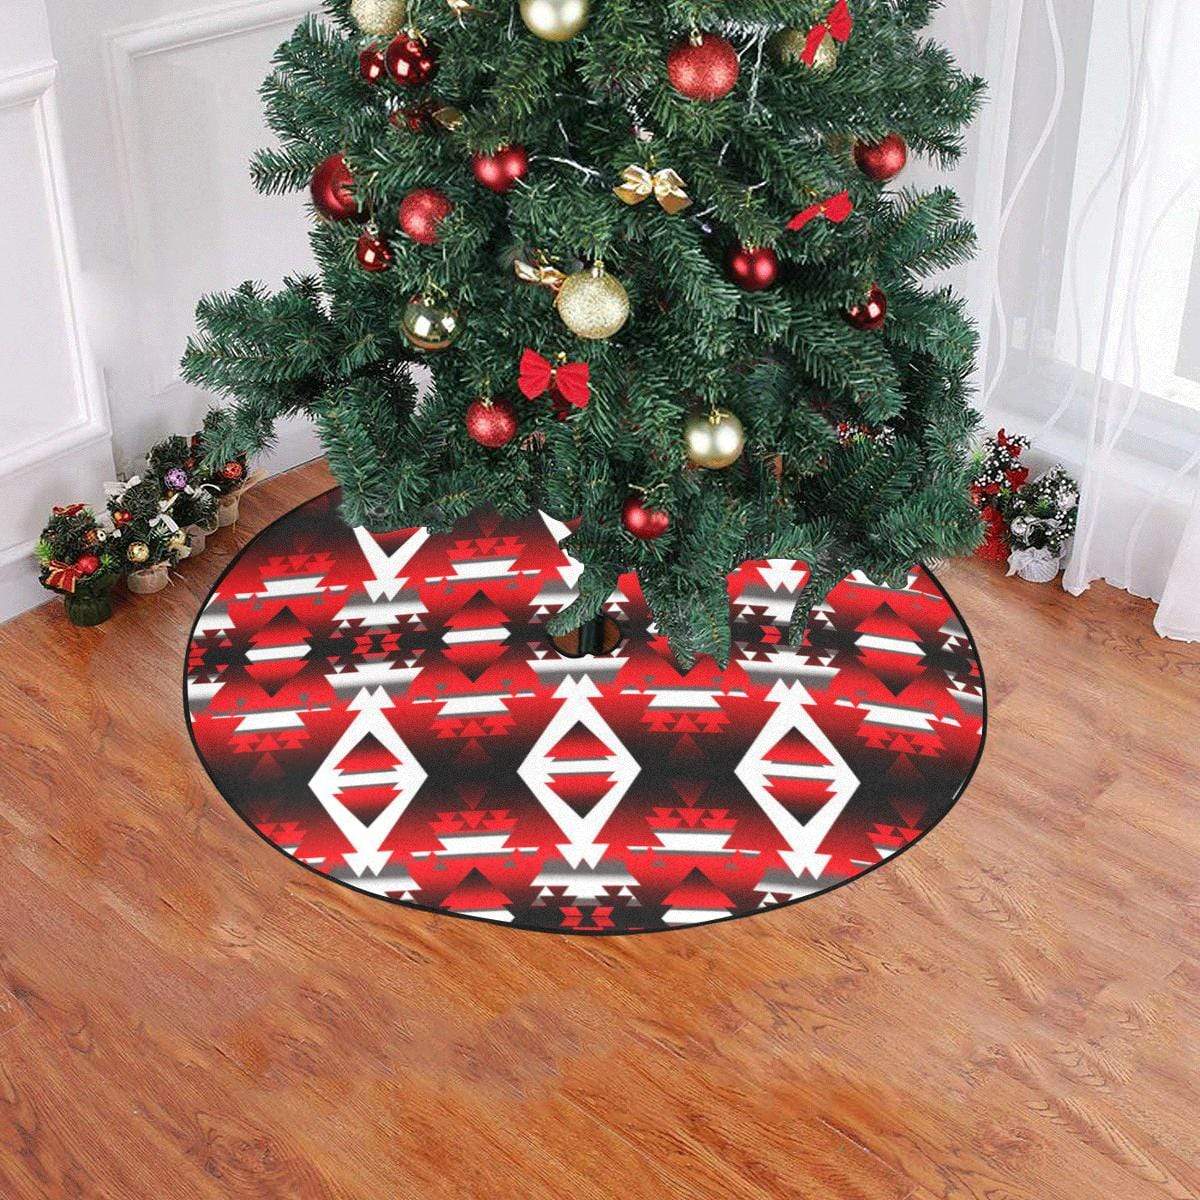 Red Winter Camp Christmas Tree Skirt 47" x 47" Christmas Tree Skirt e-joyer 